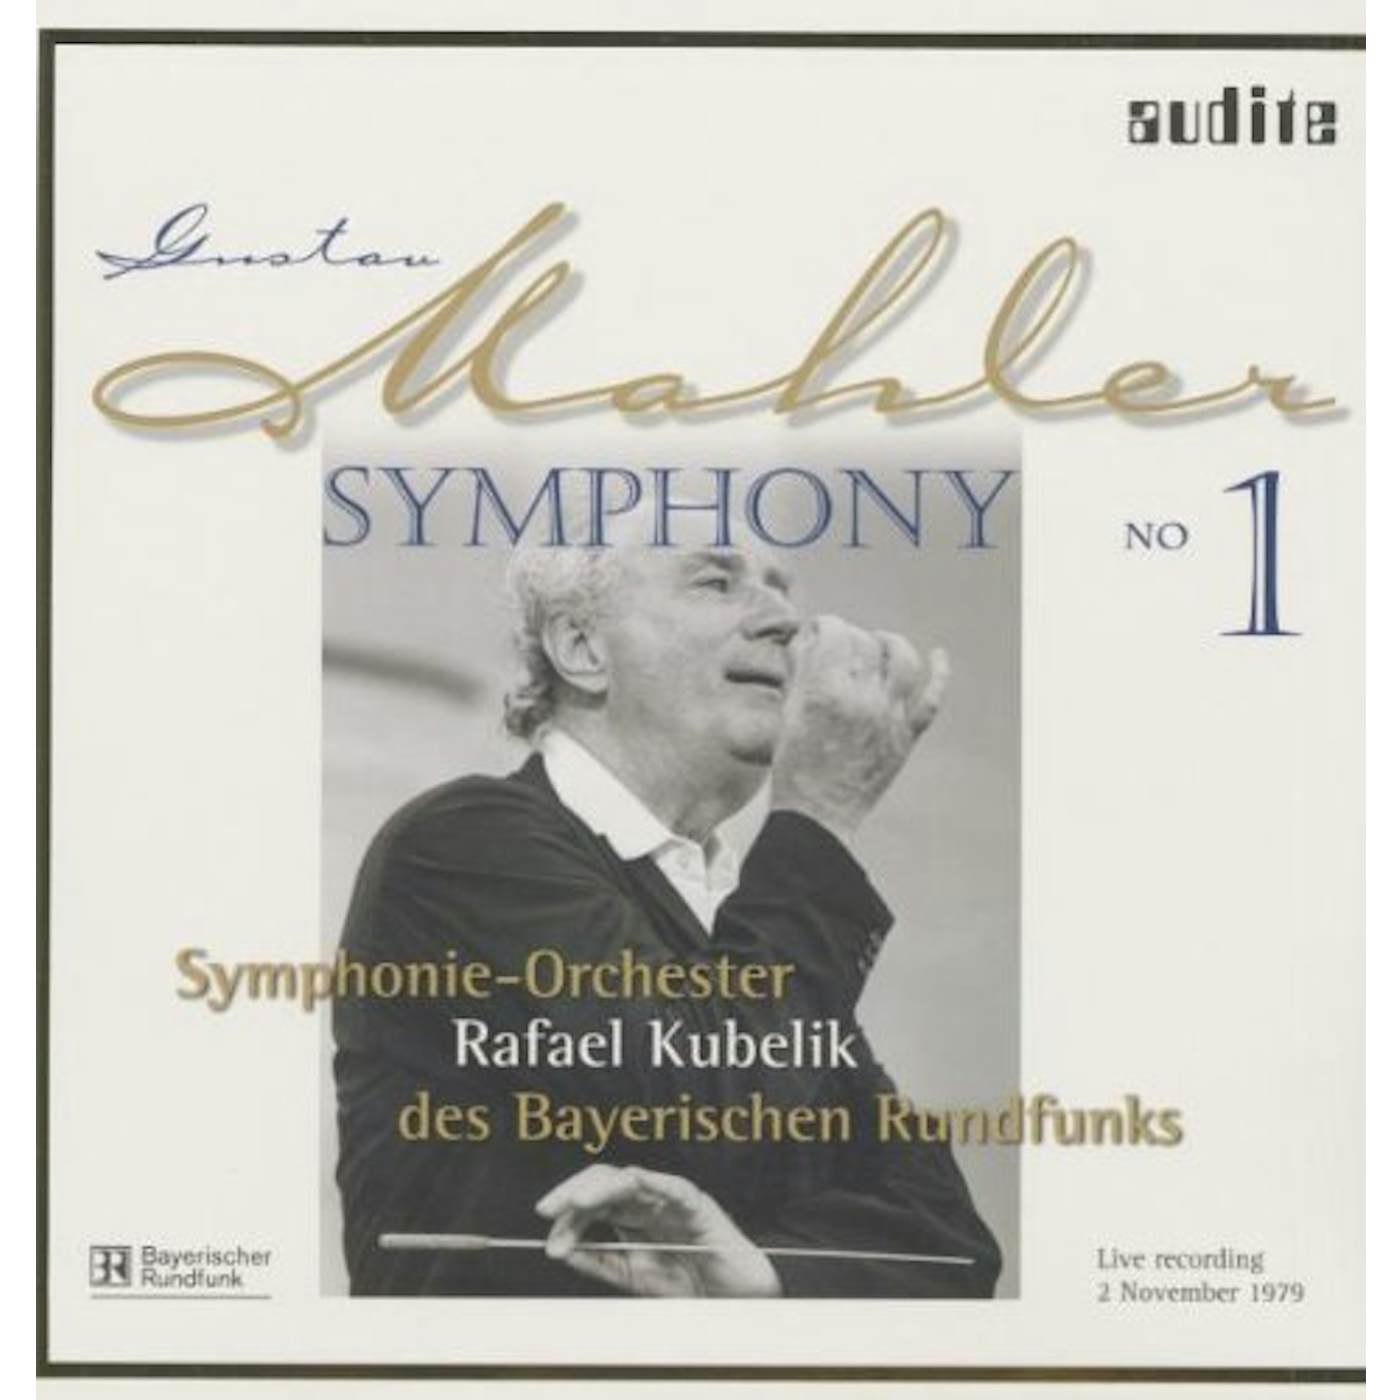 Gustav Mahler SYM 1 Vinyl Record